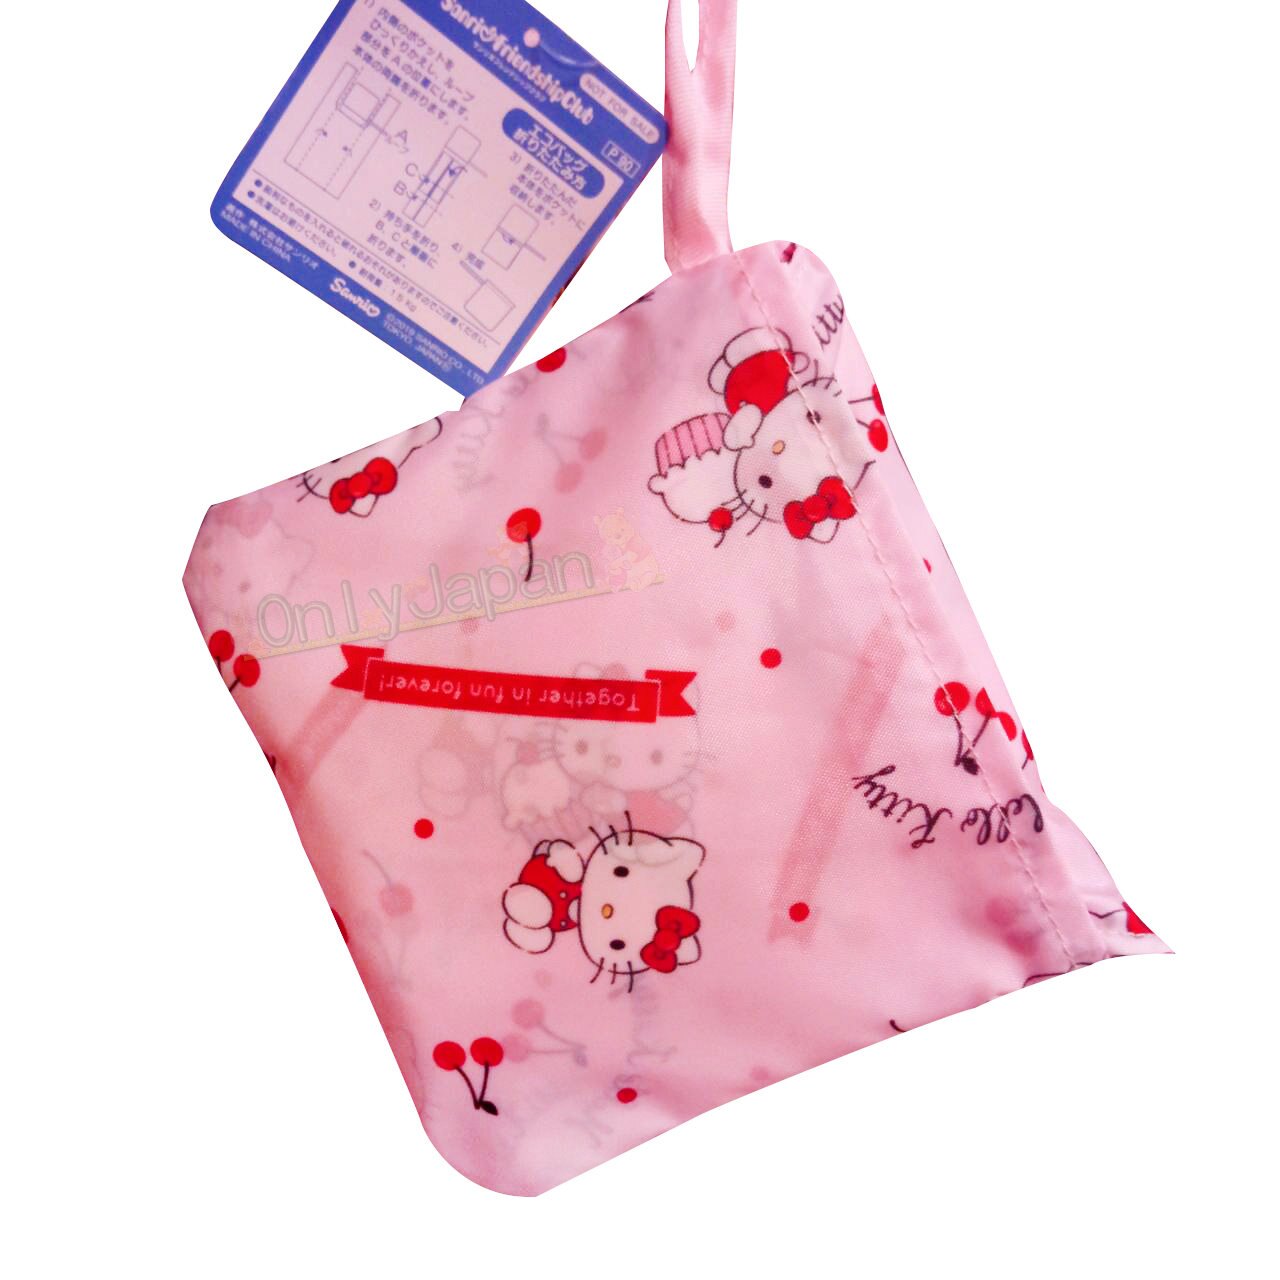 【真愛日本】凱蒂貓kitty 環保購物袋 萬用袋 野餐袋 附收納袋 大容量 輕巧耐用 19112300003 環保收納提袋-KT櫻桃粉